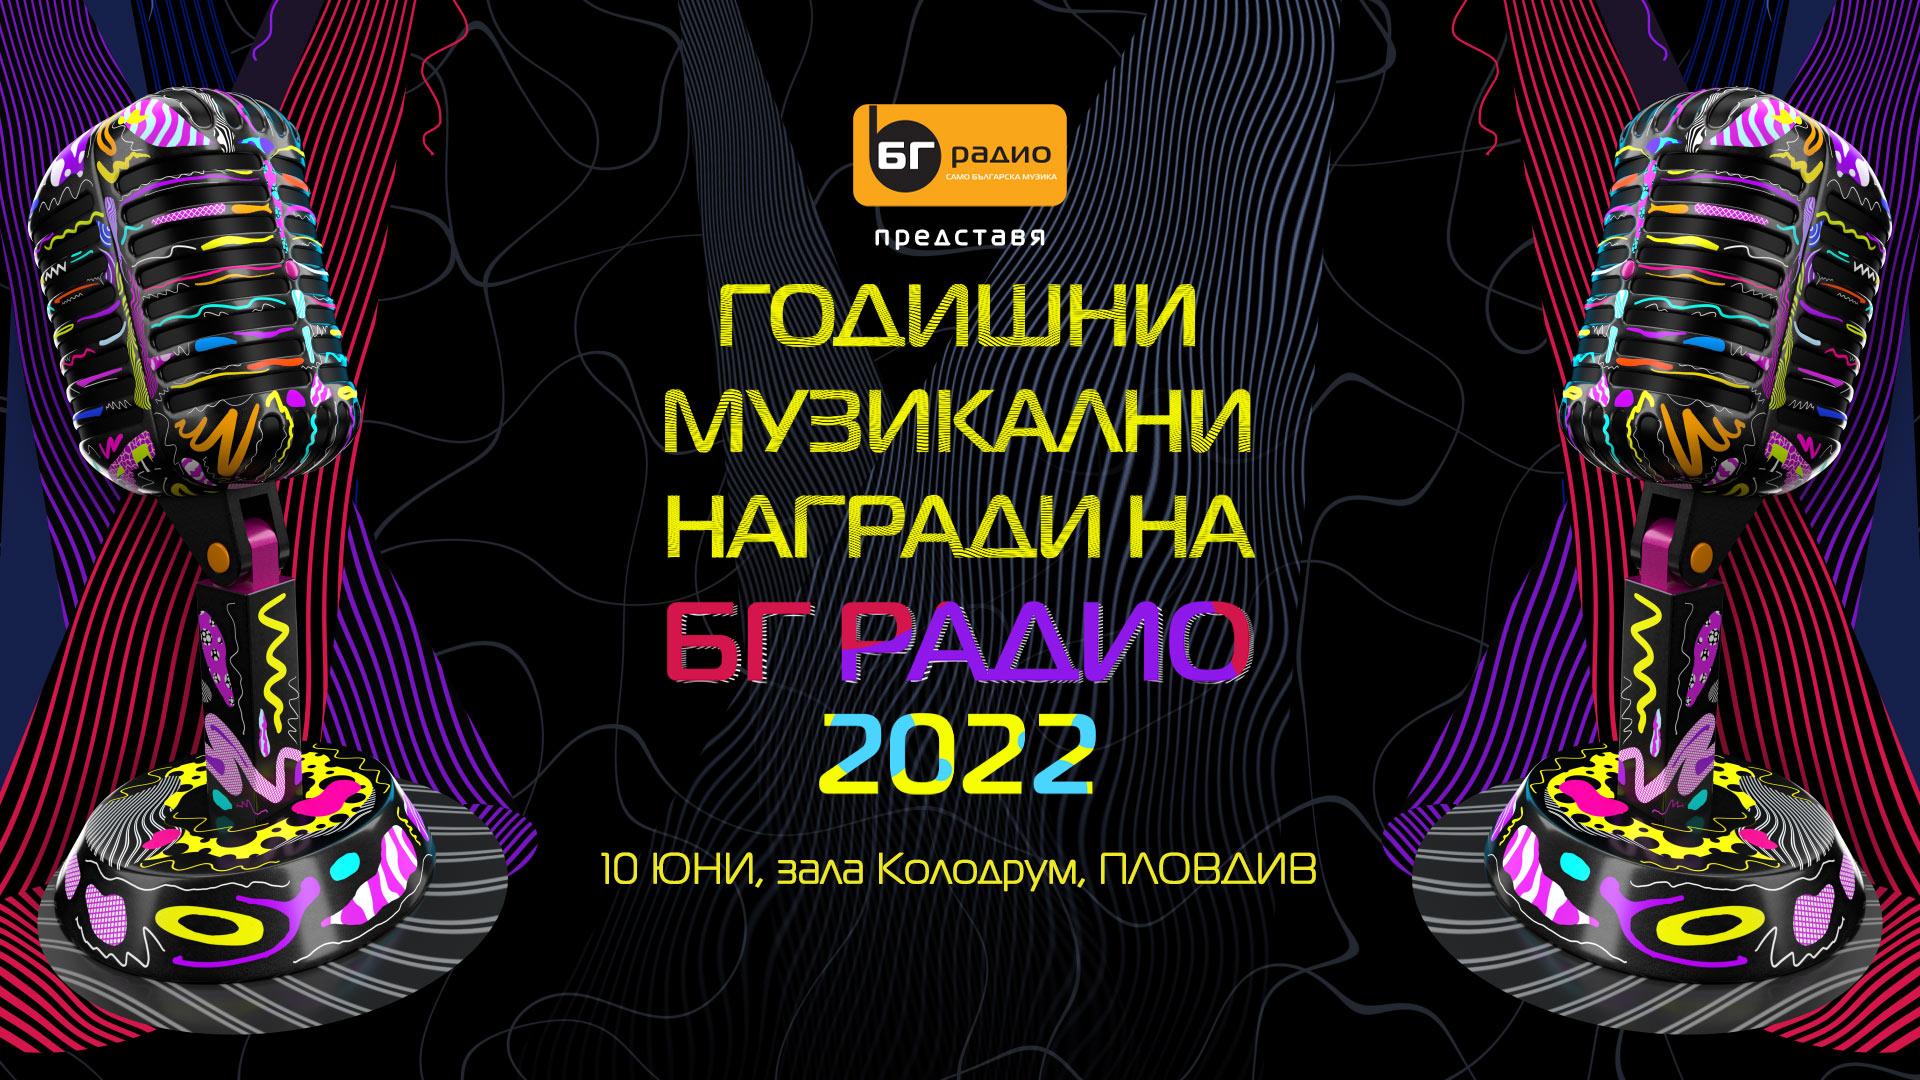 Годишни Музикални Награди 2022 на БГ РАДИО в Пловдив - номинации